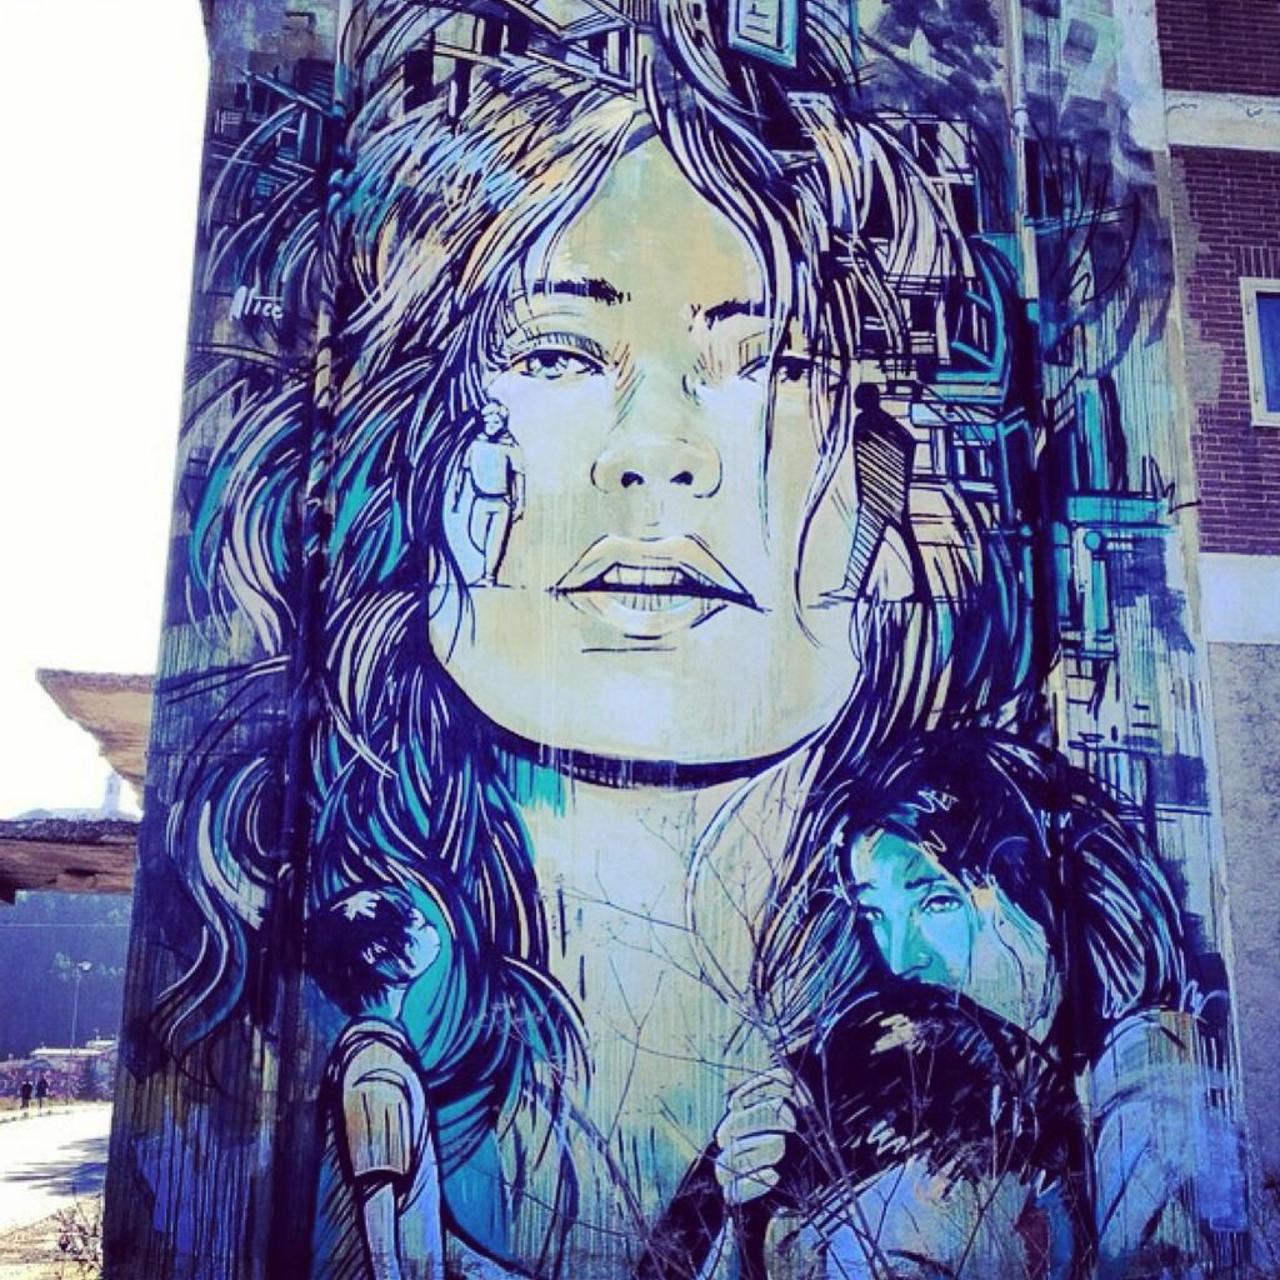 #graffitiart #graffiti #murales #mural #StreetArt #muralart http://t.co/1p8b7eHwd1